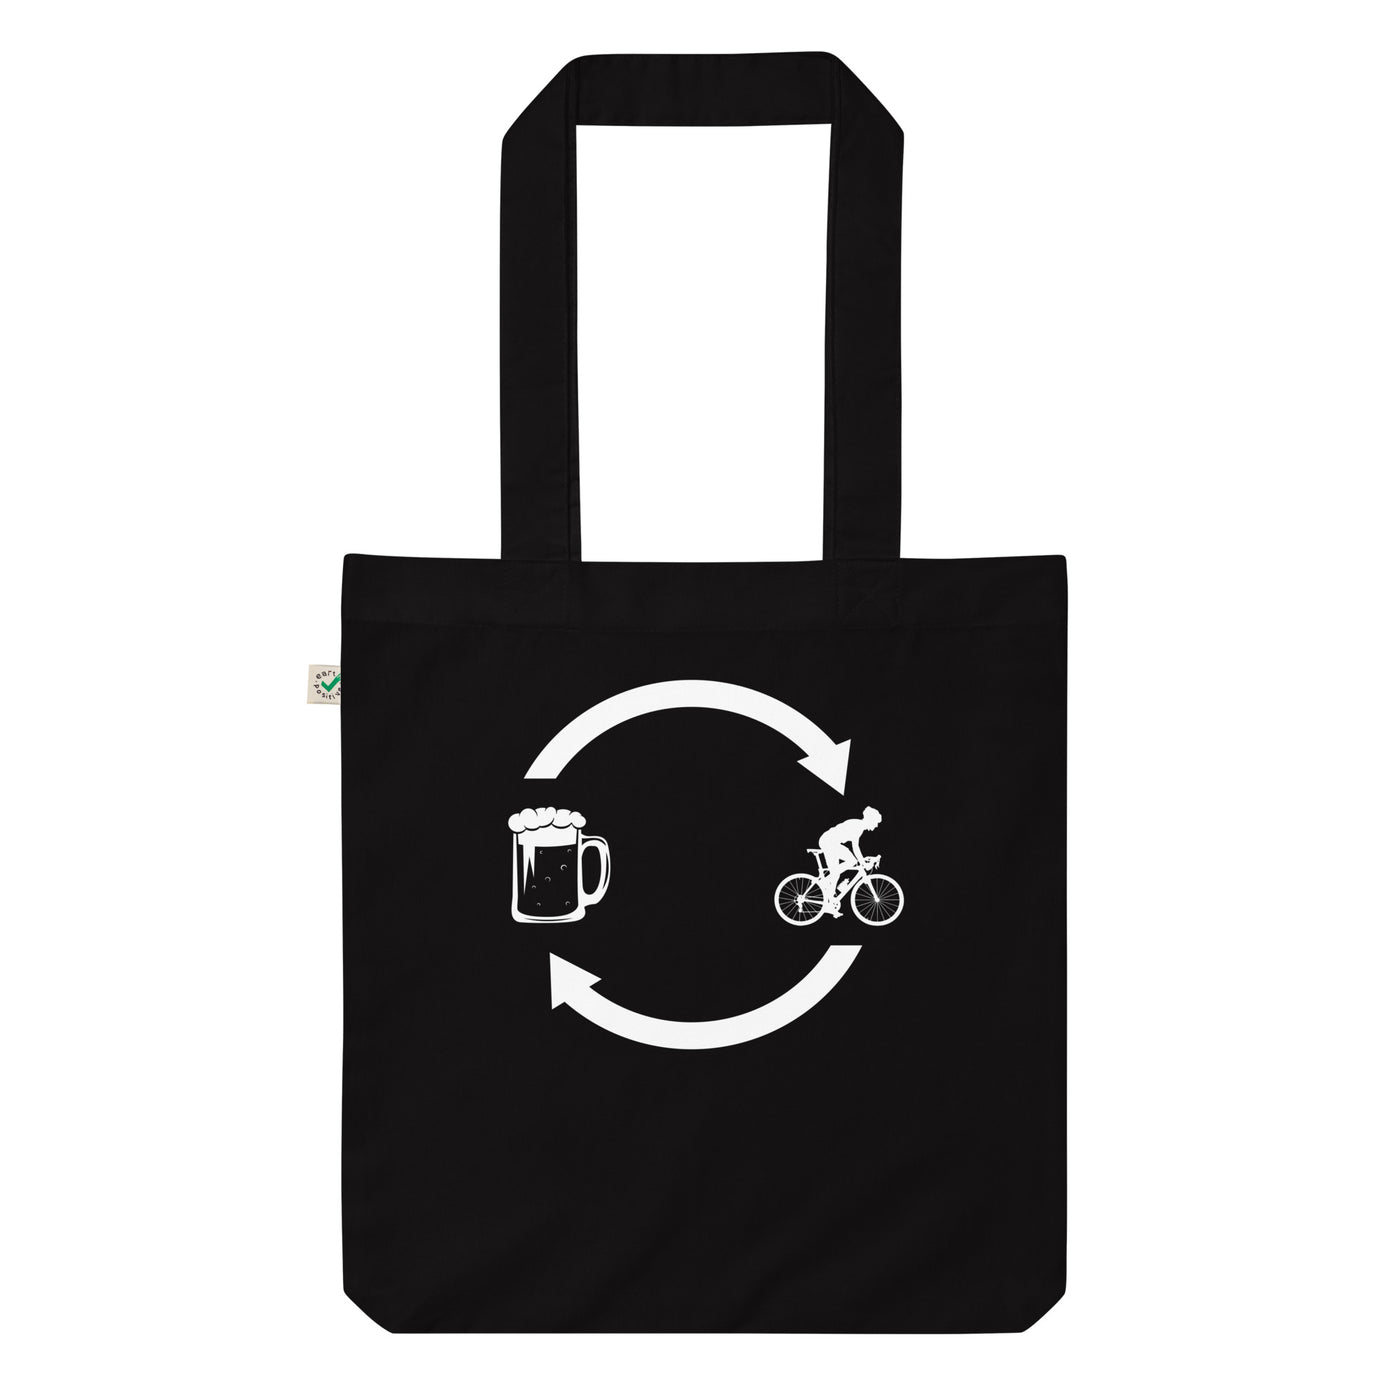 Bier, Ladende Pfeile Und Radfahren 1 - Organic Einkaufstasche fahrrad Black